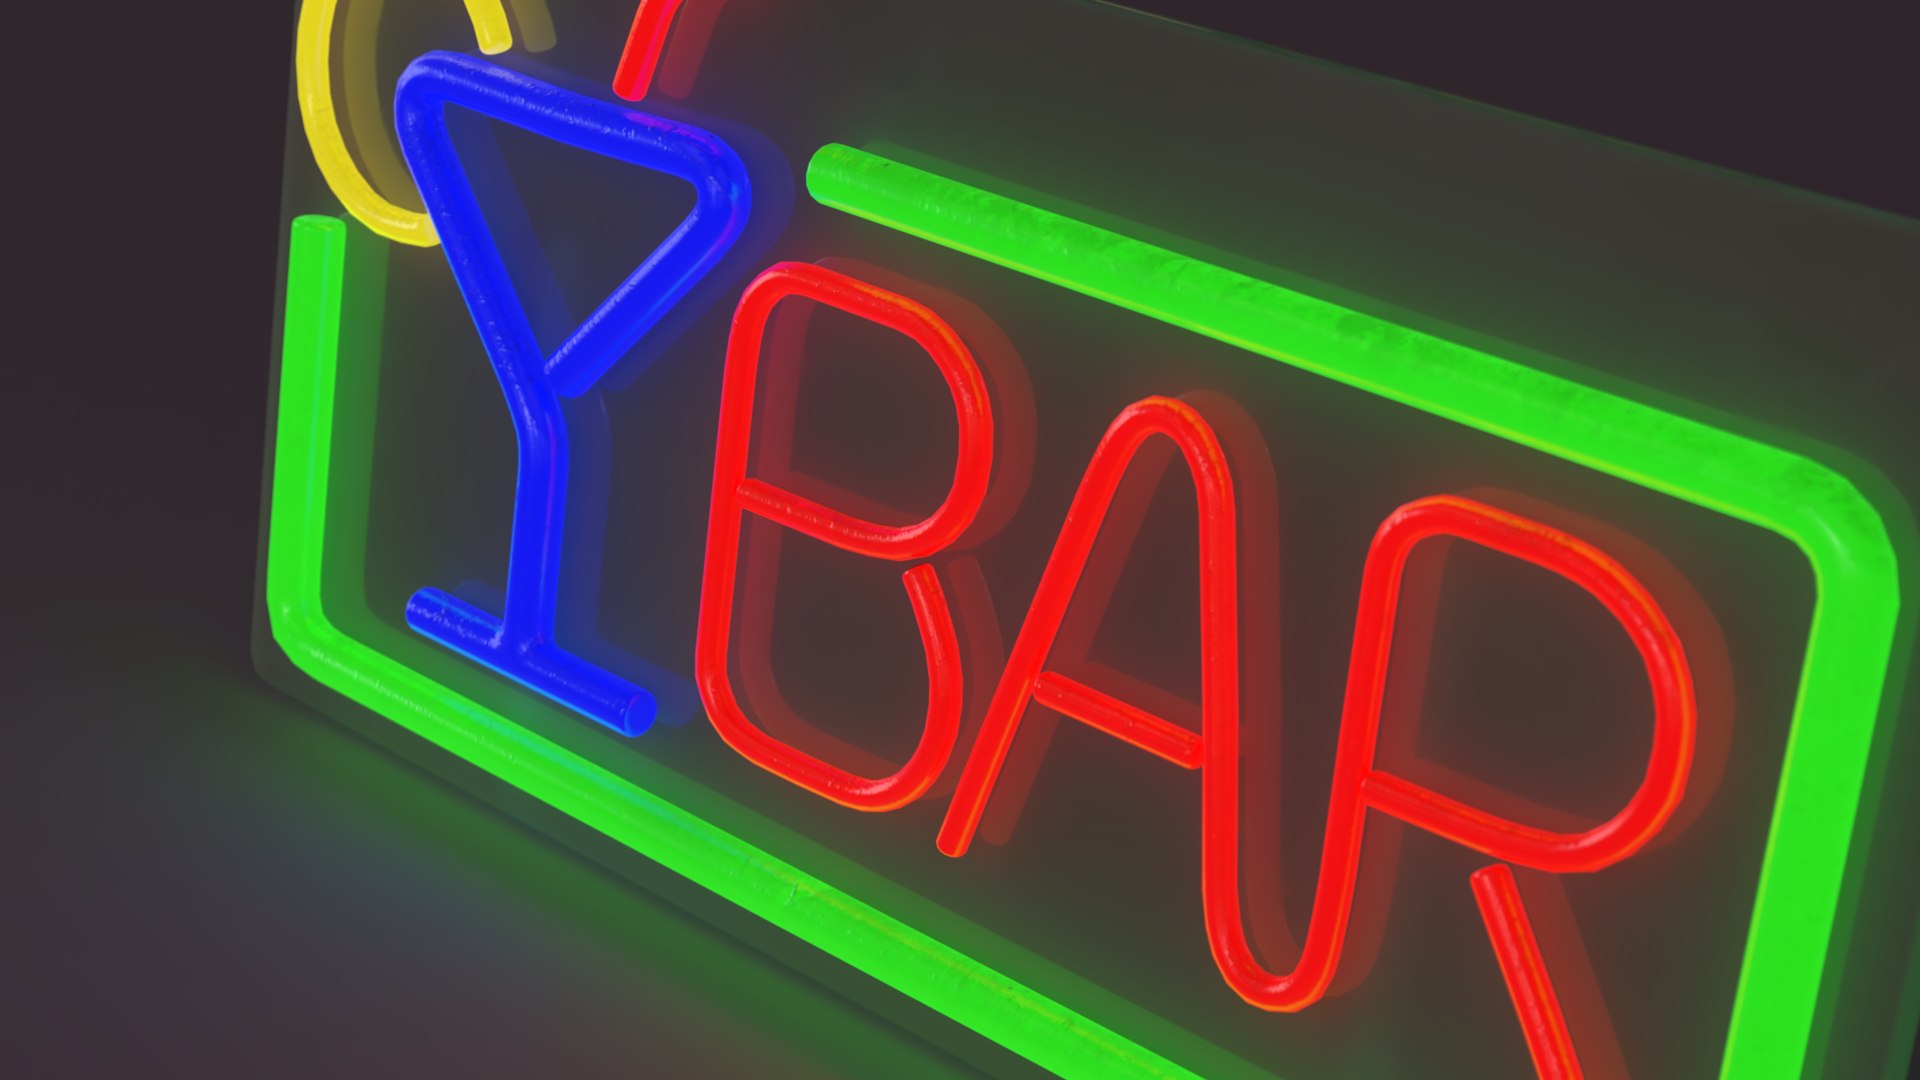 Neon bar table sign 3D model - TurboSquid 2165701